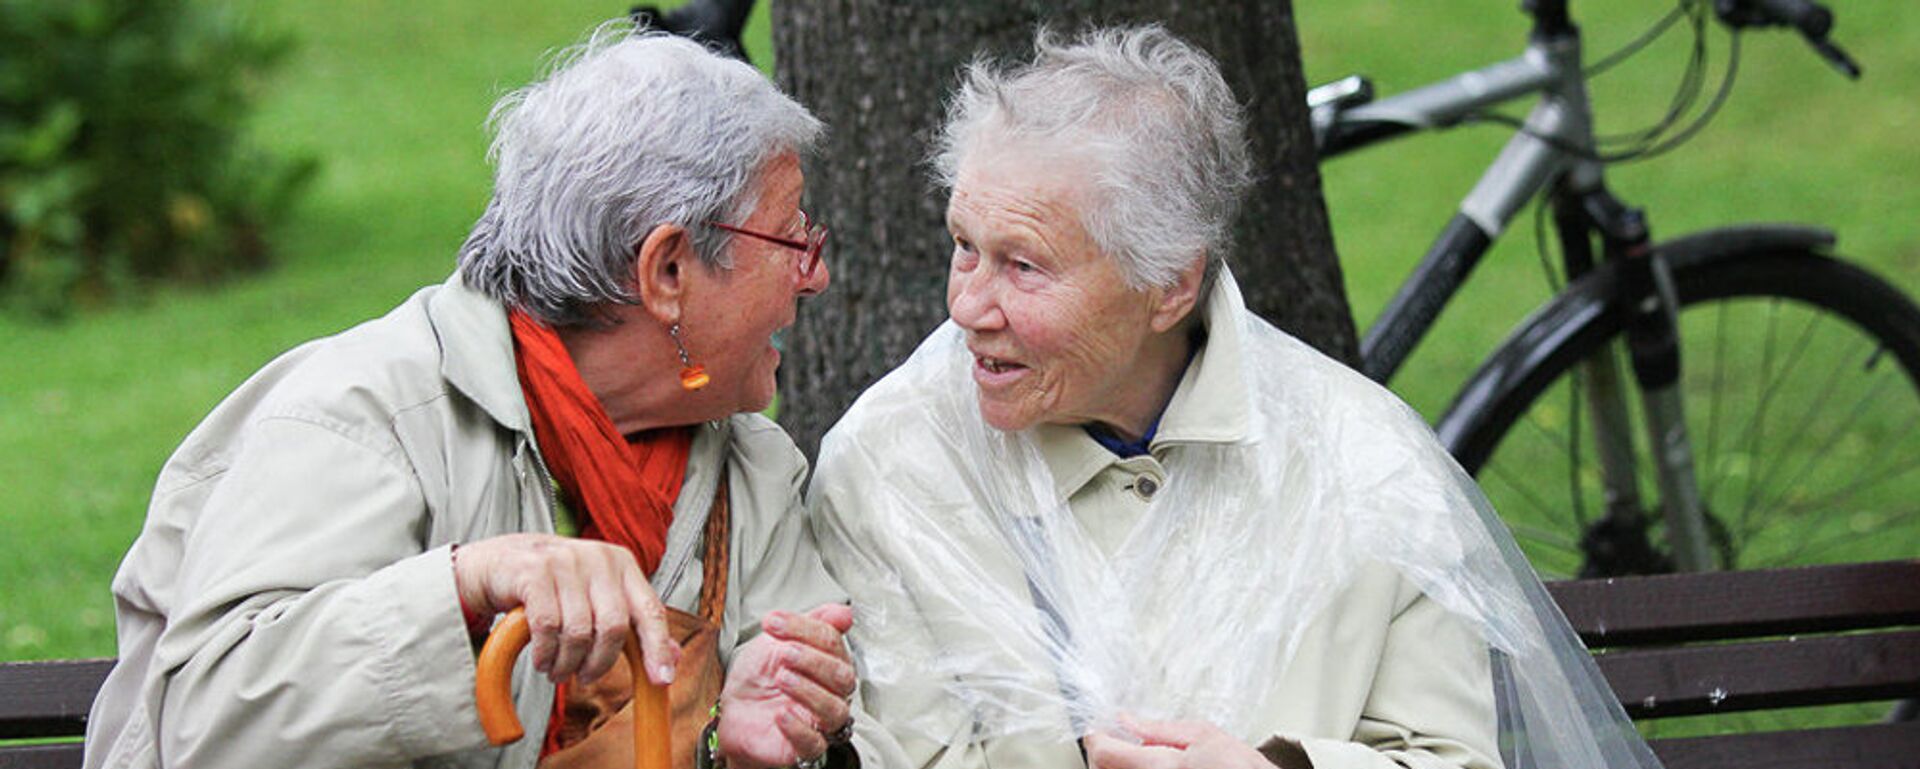 Пожилые женщины в парке - Sputnik Latvija, 1920, 09.04.2021